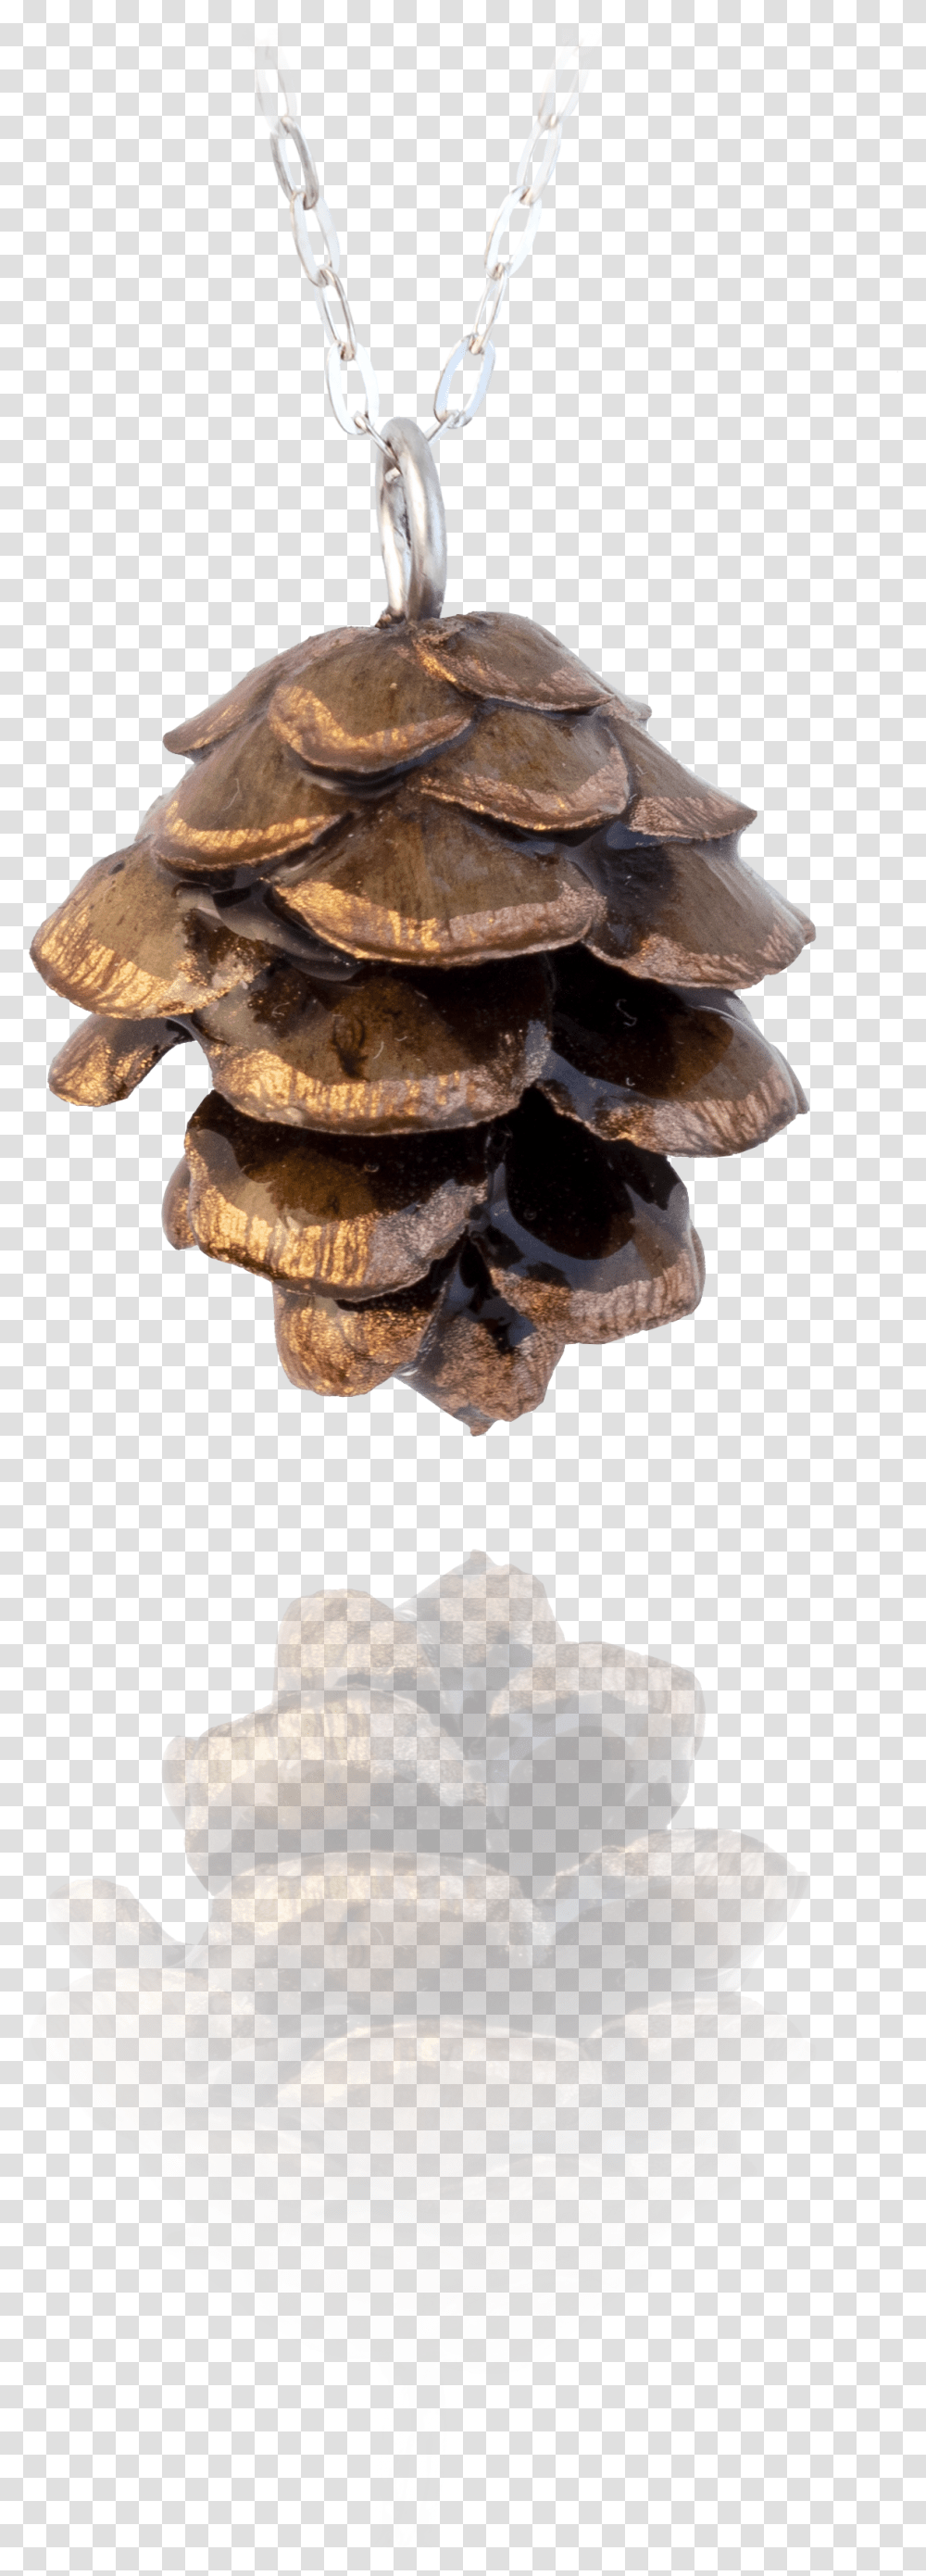 Christmas Tree, Fungus, Plant, Mushroom, Agaric Transparent Png